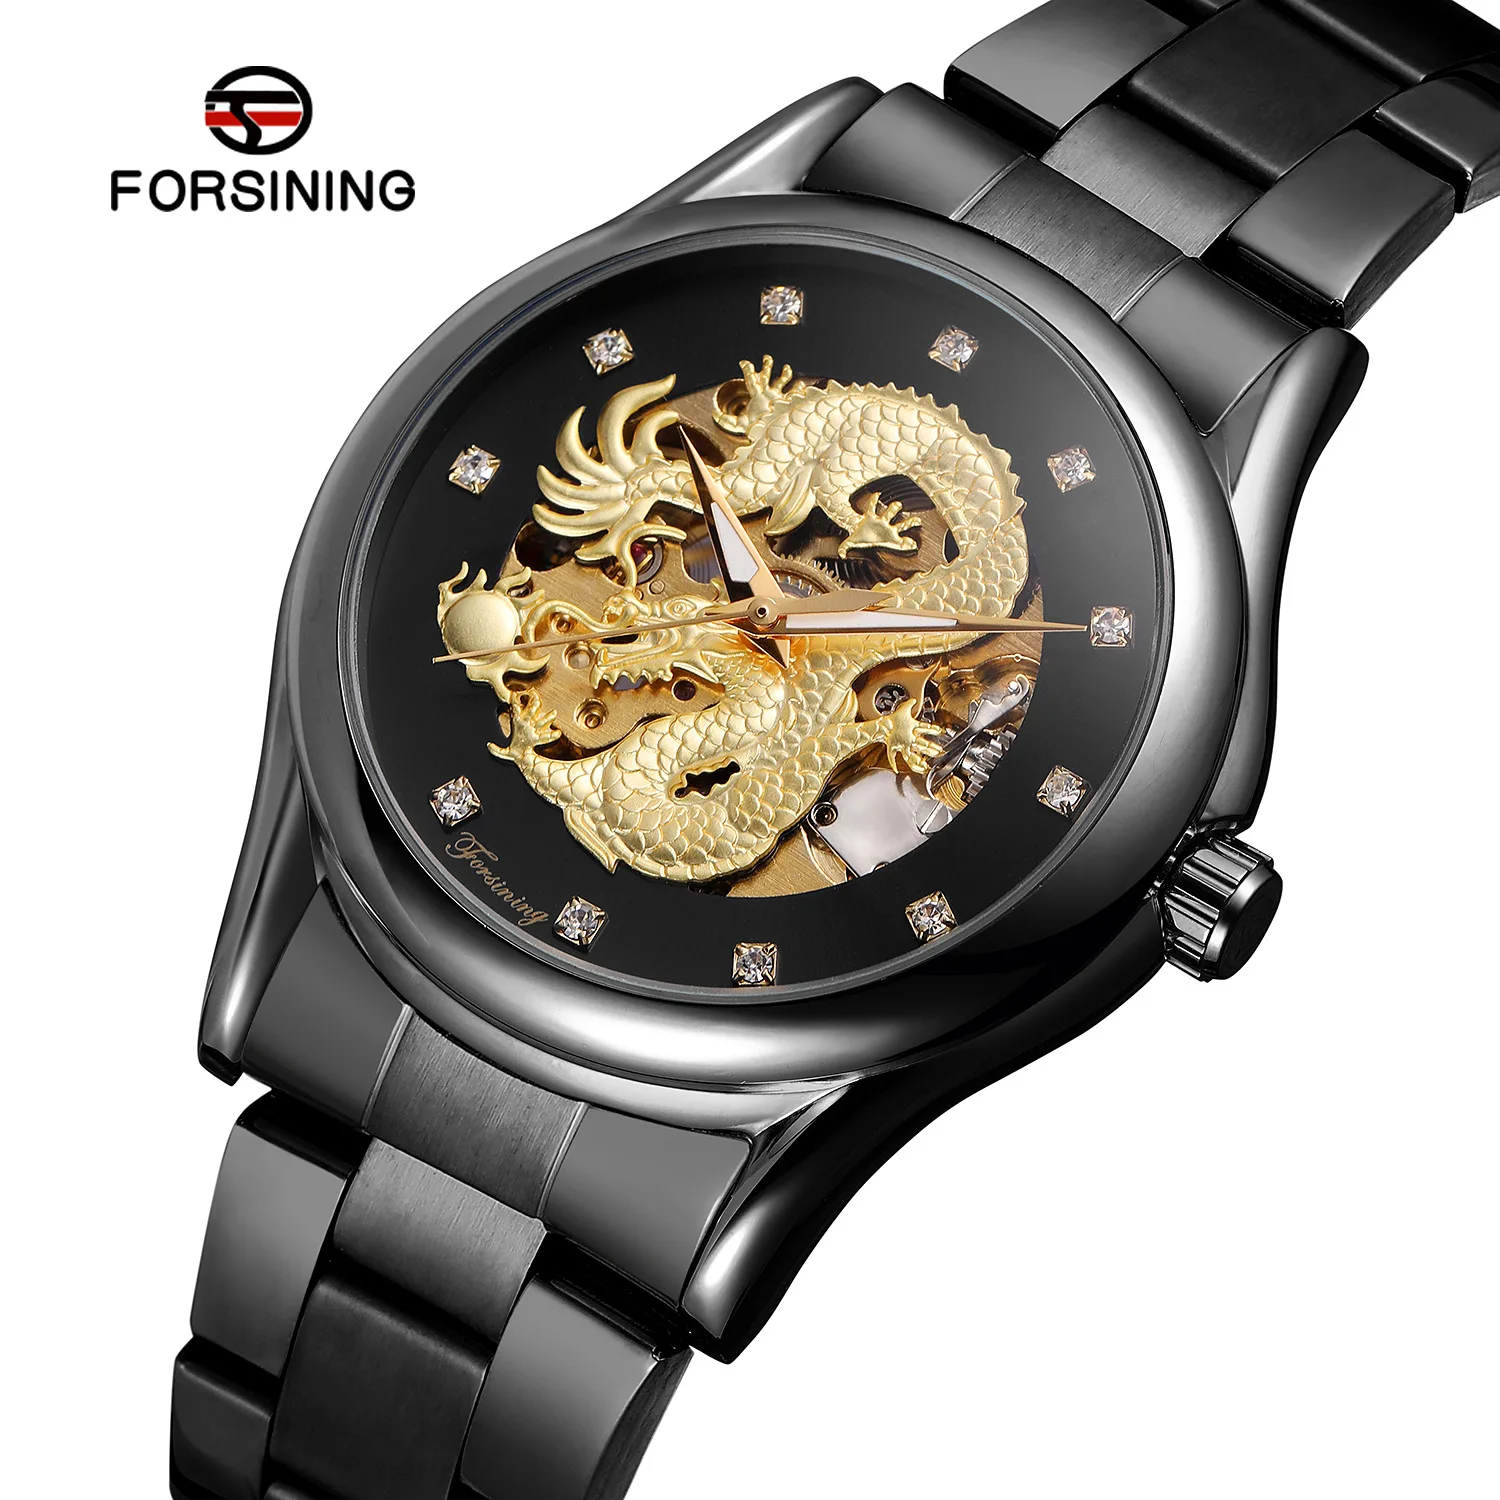 Forsining подлинный продукт мужские полностью автоматические механические наручные часы повседневные выдалбливают дракон дизайн стальной ремень Механические мужские